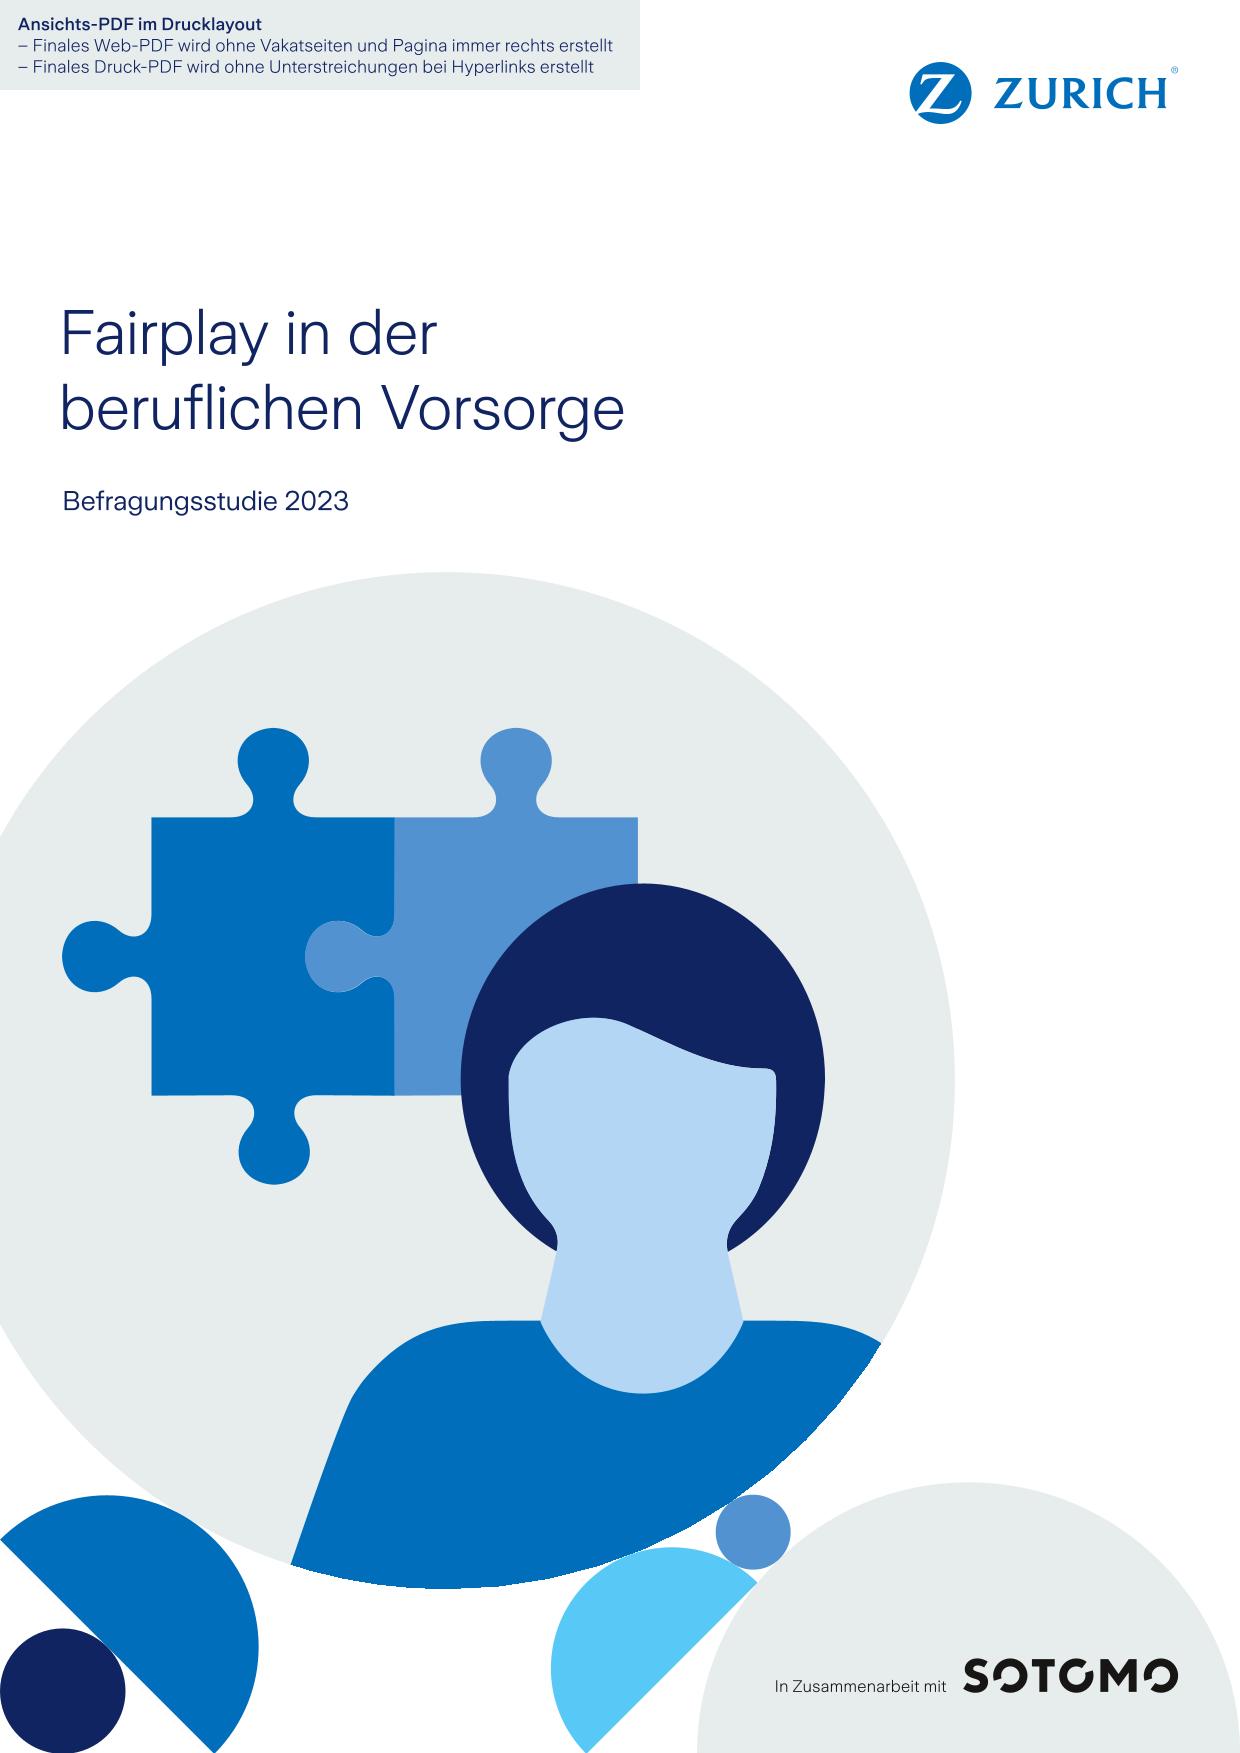 Zurich Fairplay berufliche Vorsorge 2023 DE 01